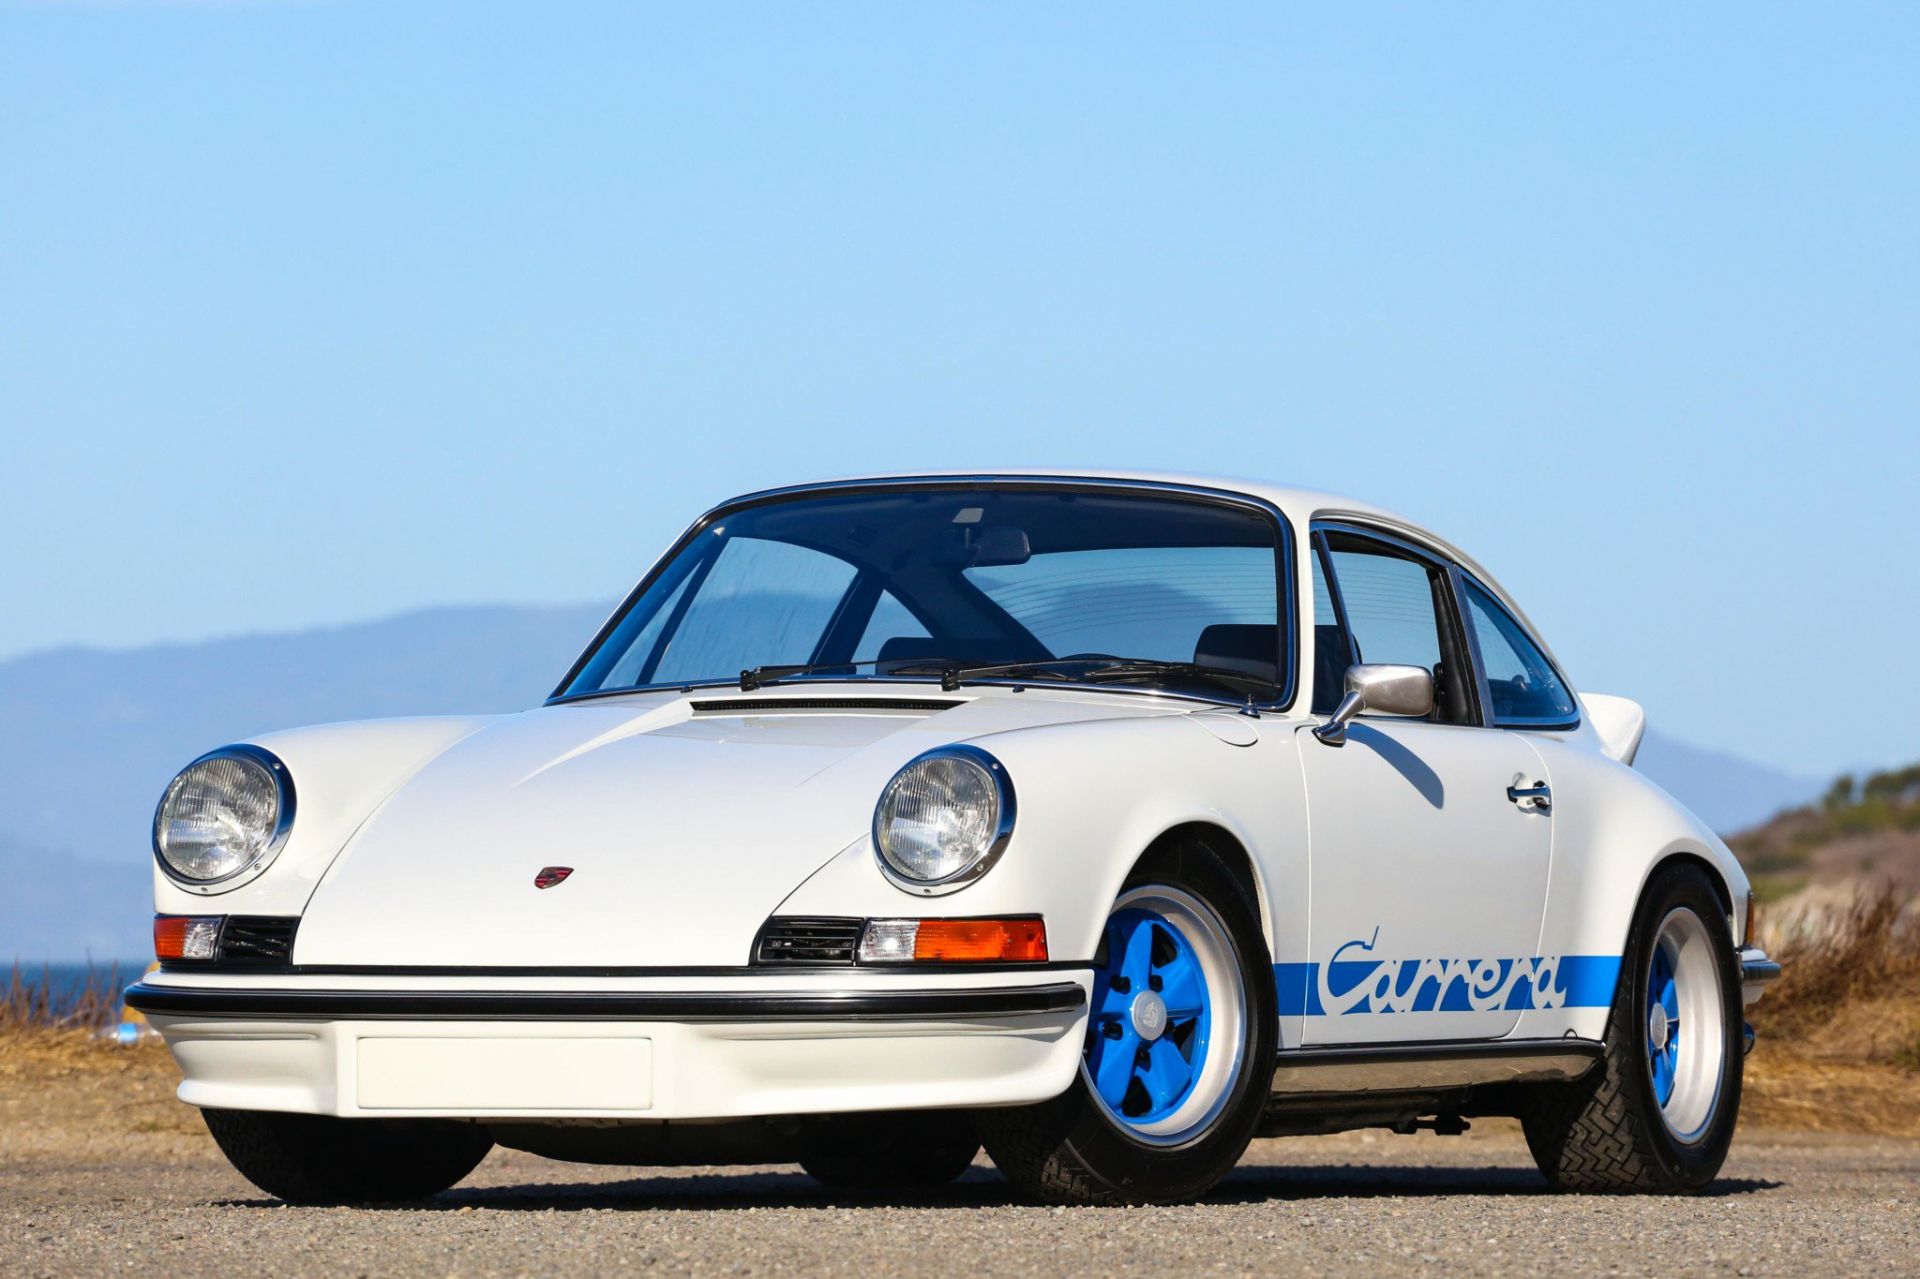 Porsche cổ 1 gương chiếu hậu, giá bán ngang siêu xe hiện đại